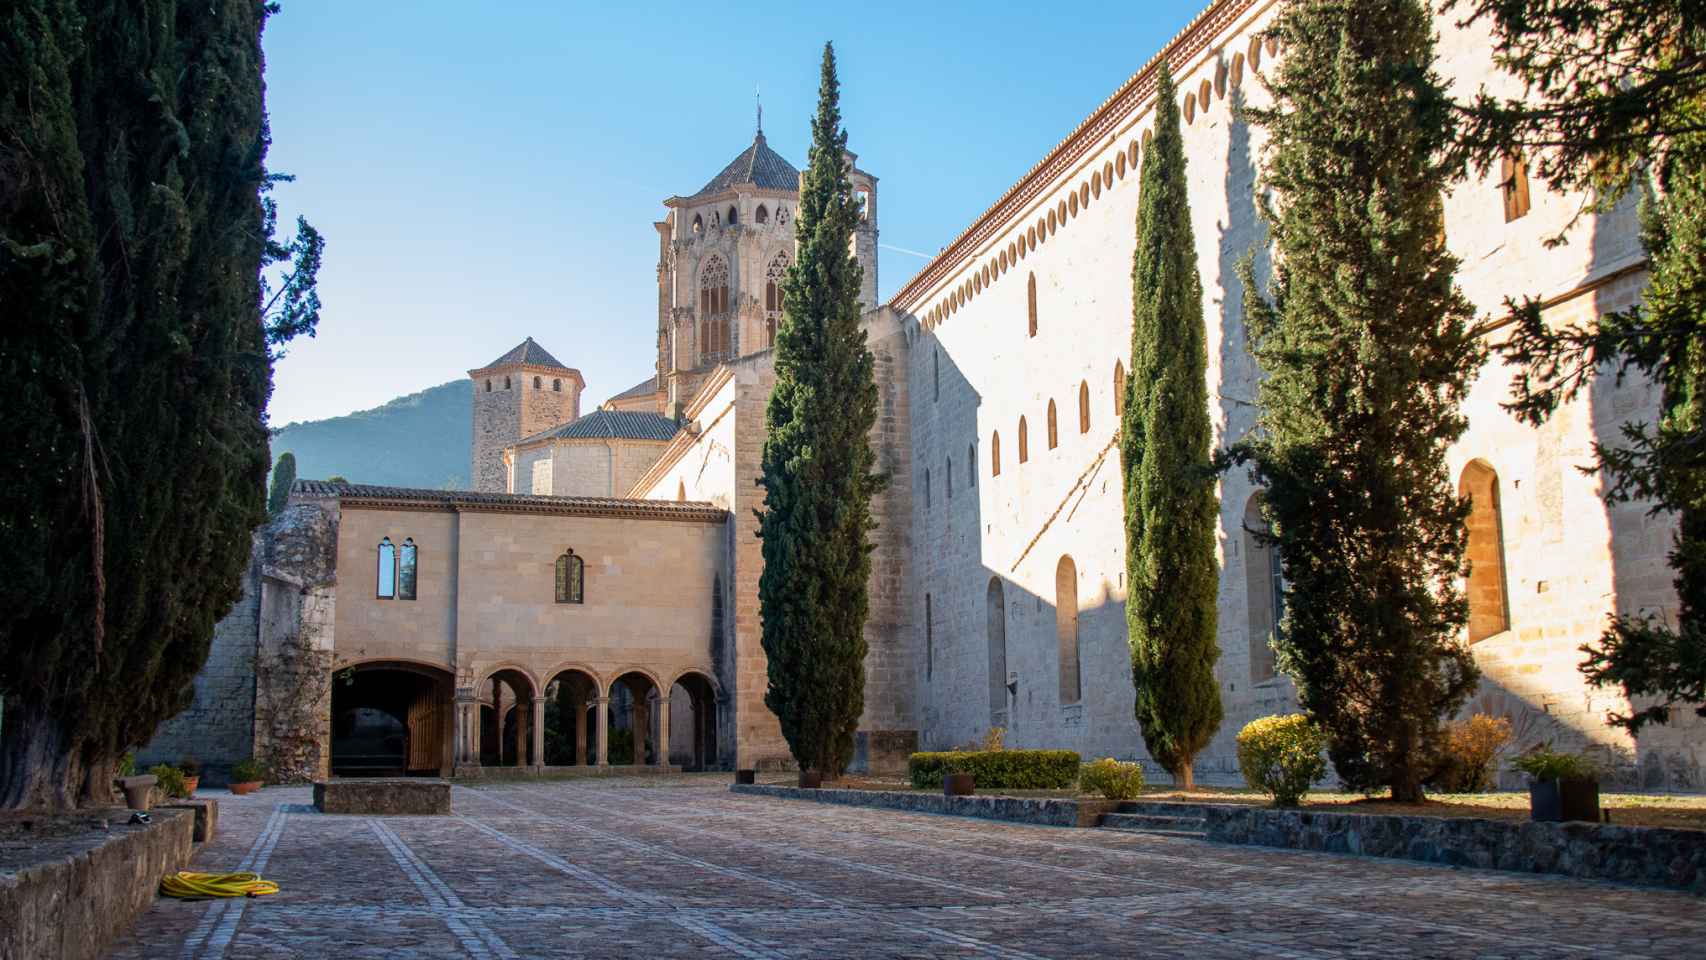 El interior de la zona de clausura destinada a los monjes cistercienses; de fondo, el característico cimborrio del monasterio de Poblet.